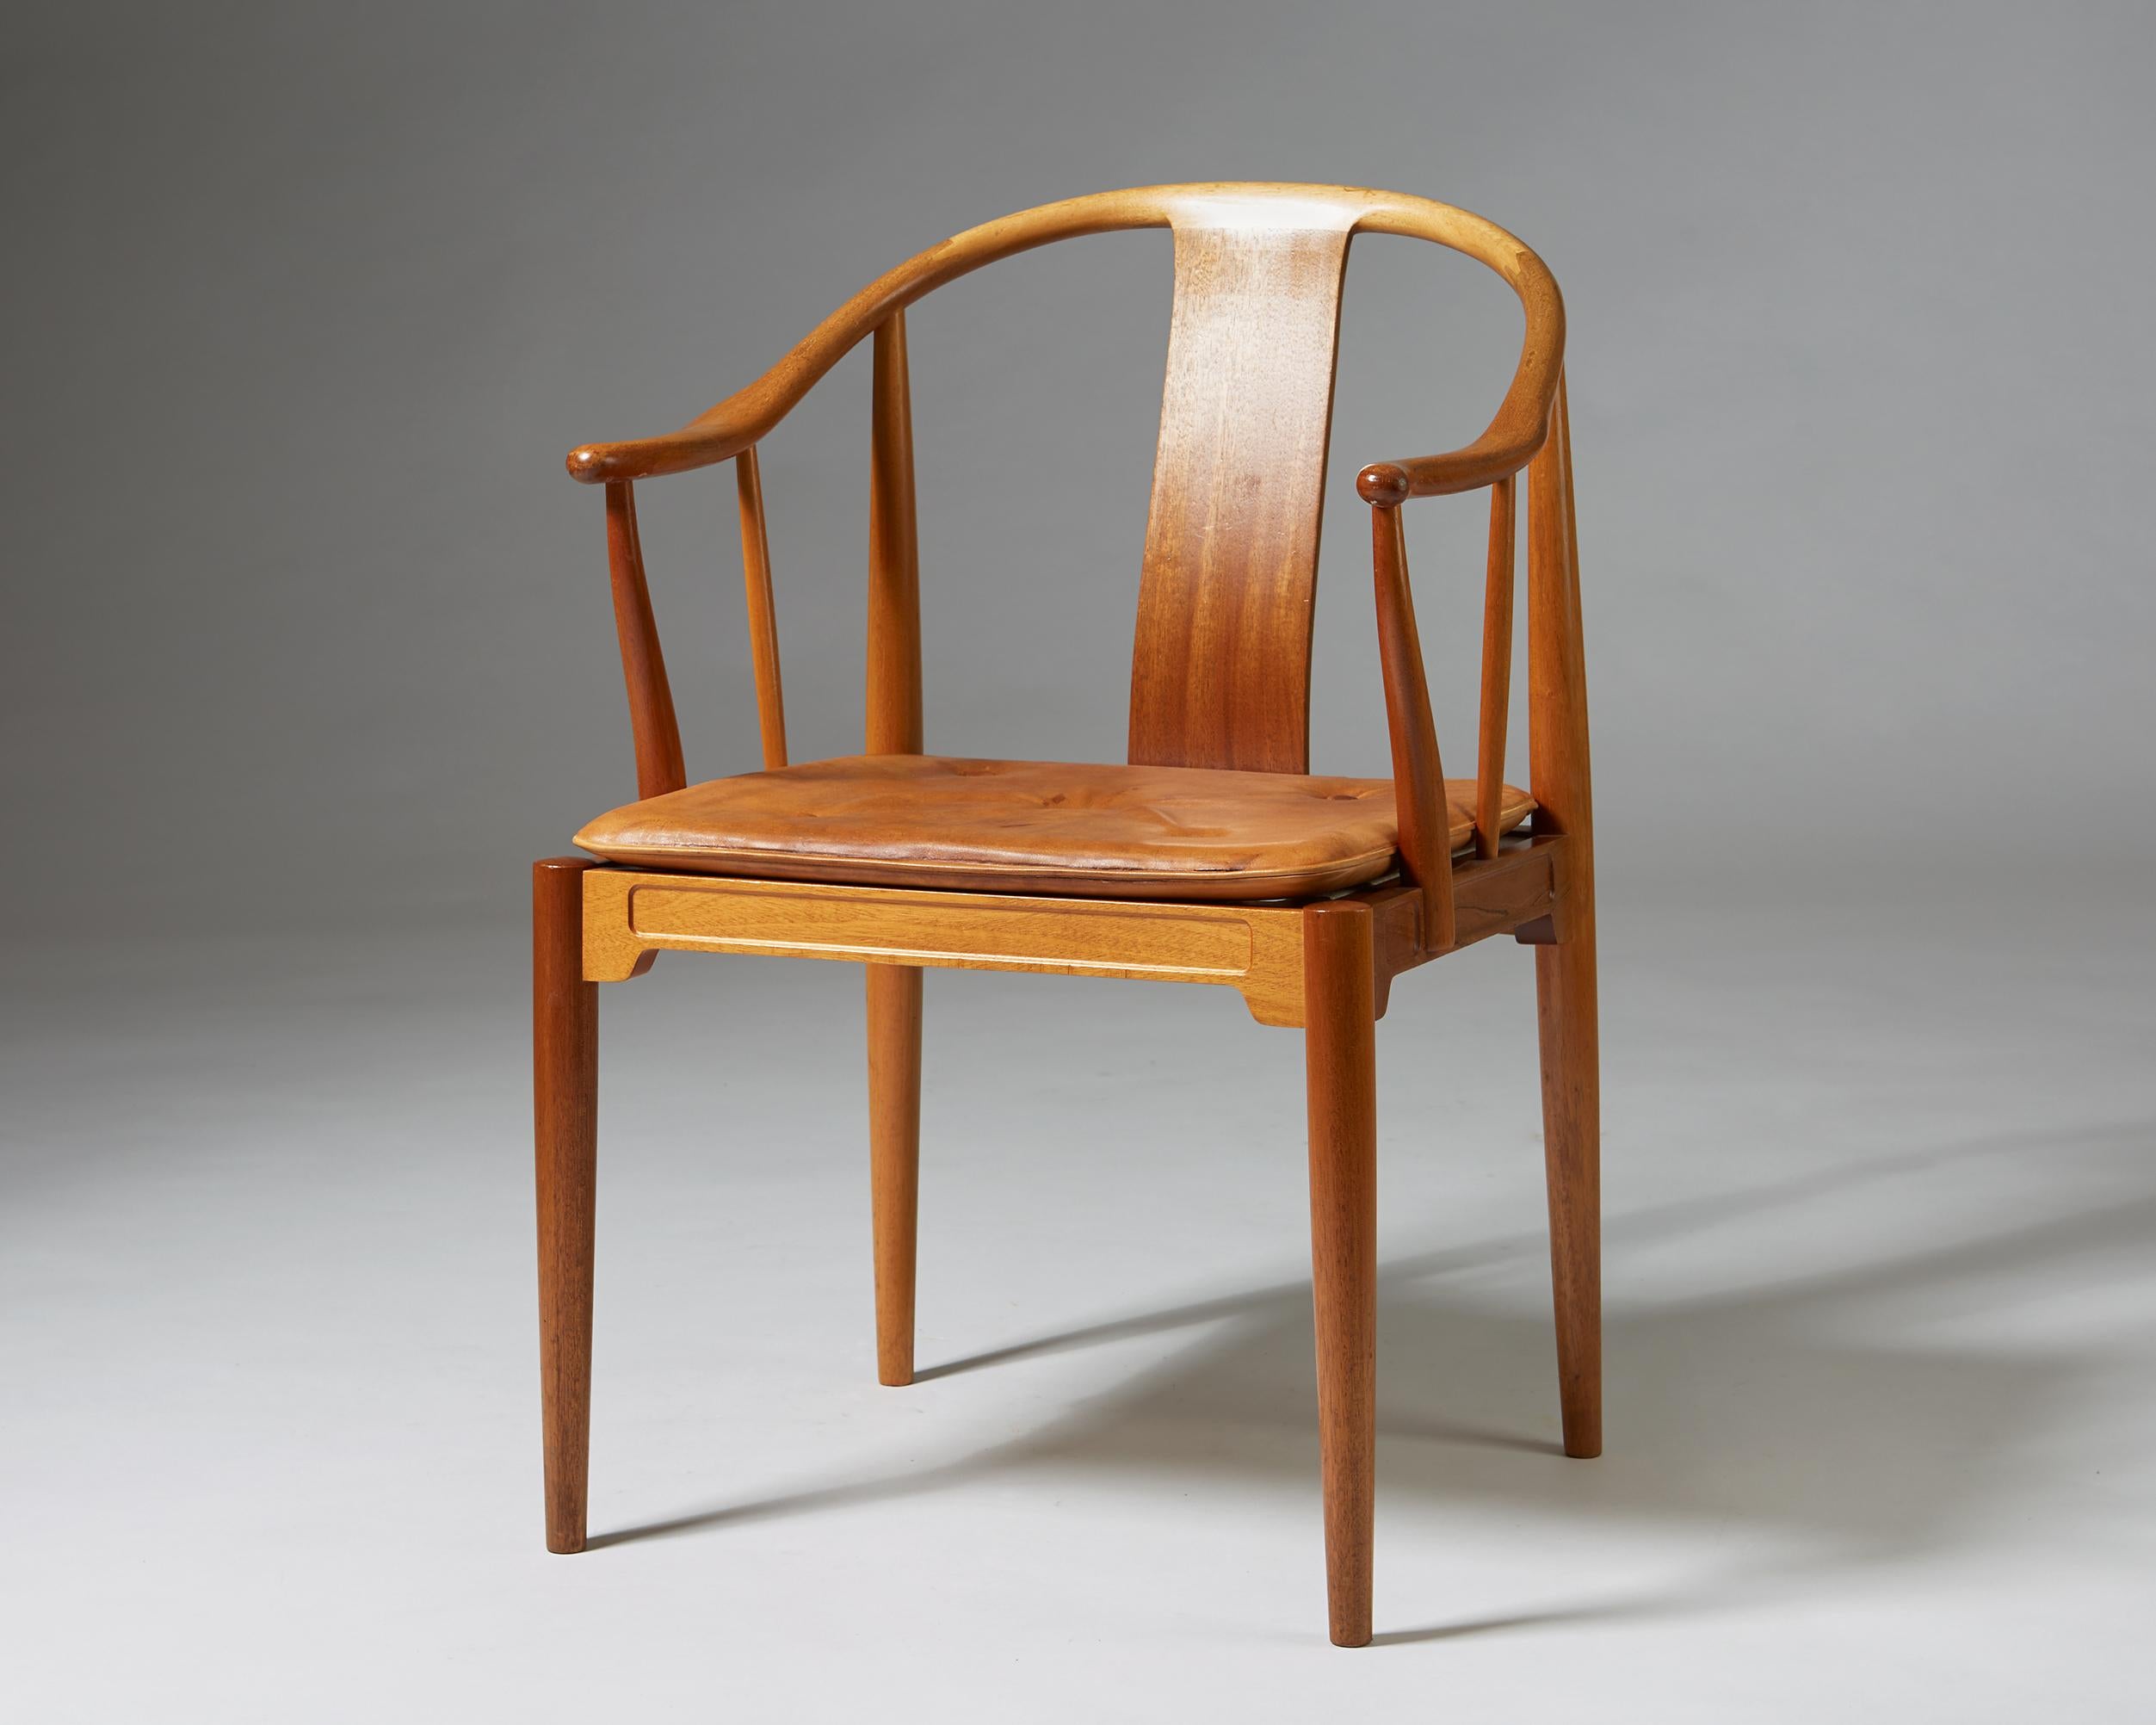 China chair designed by Hans J. Wegner for Fritz Hansen.
Denmark, 1980s.